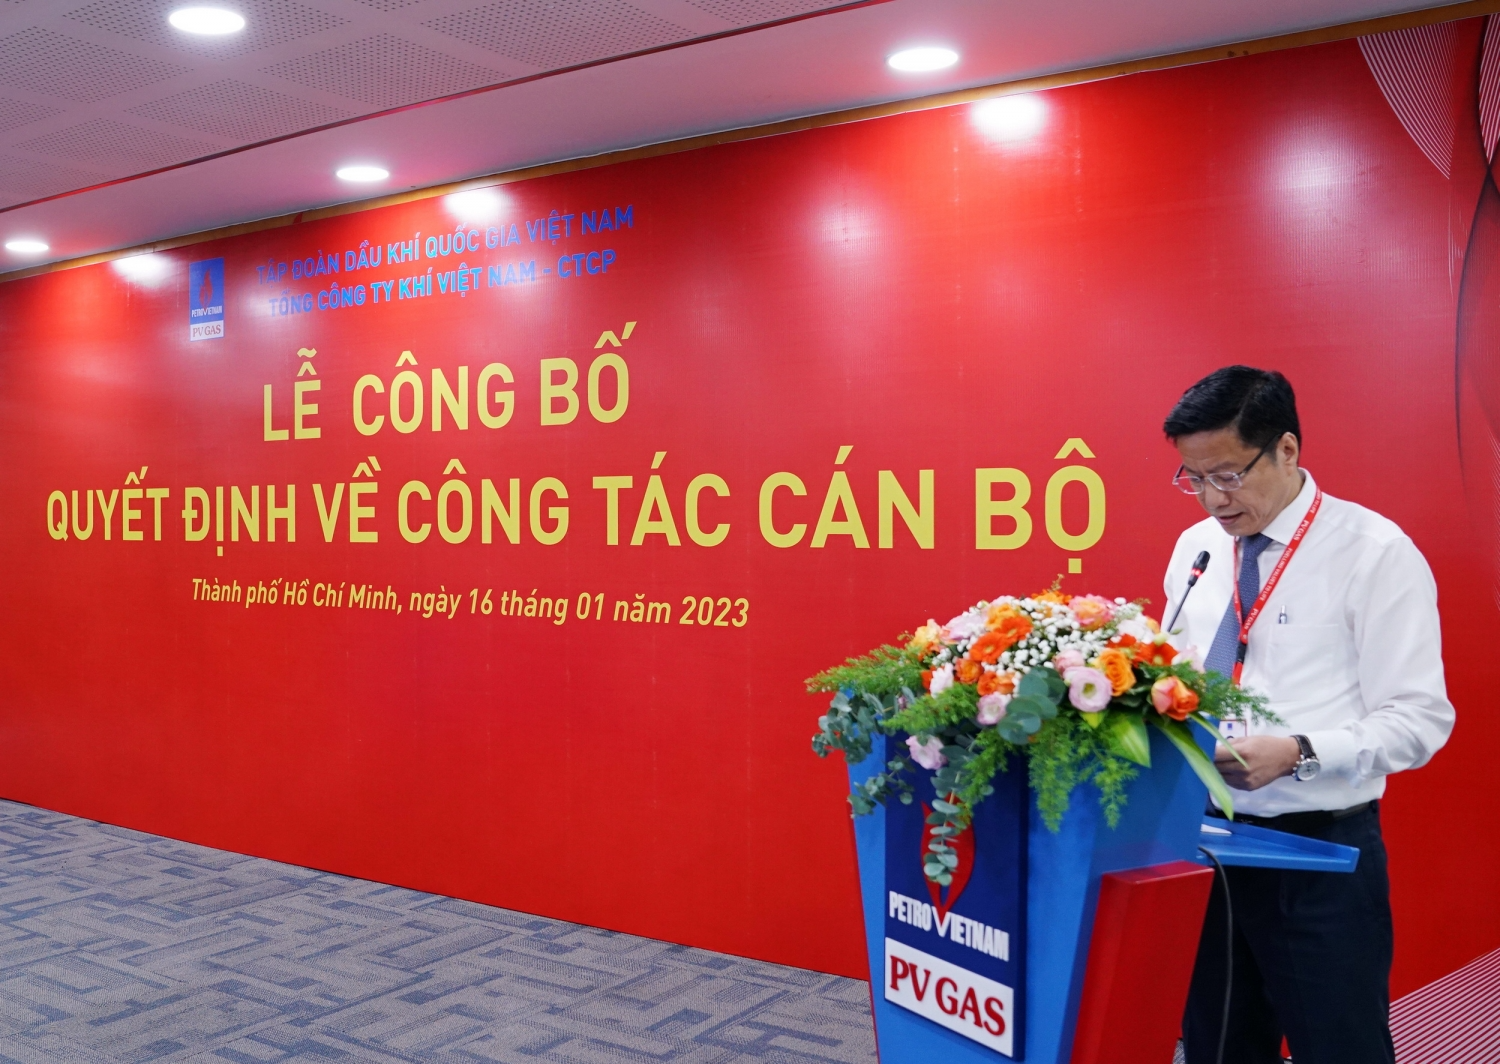 Đồng chí Trần Đức Sơn –Phó Bí thư Đảng ủy, Trưởng Ban Tổ chức – Nhân sự PV GAS công bố 2 quyết định bổ nhiệm cán bộ mới